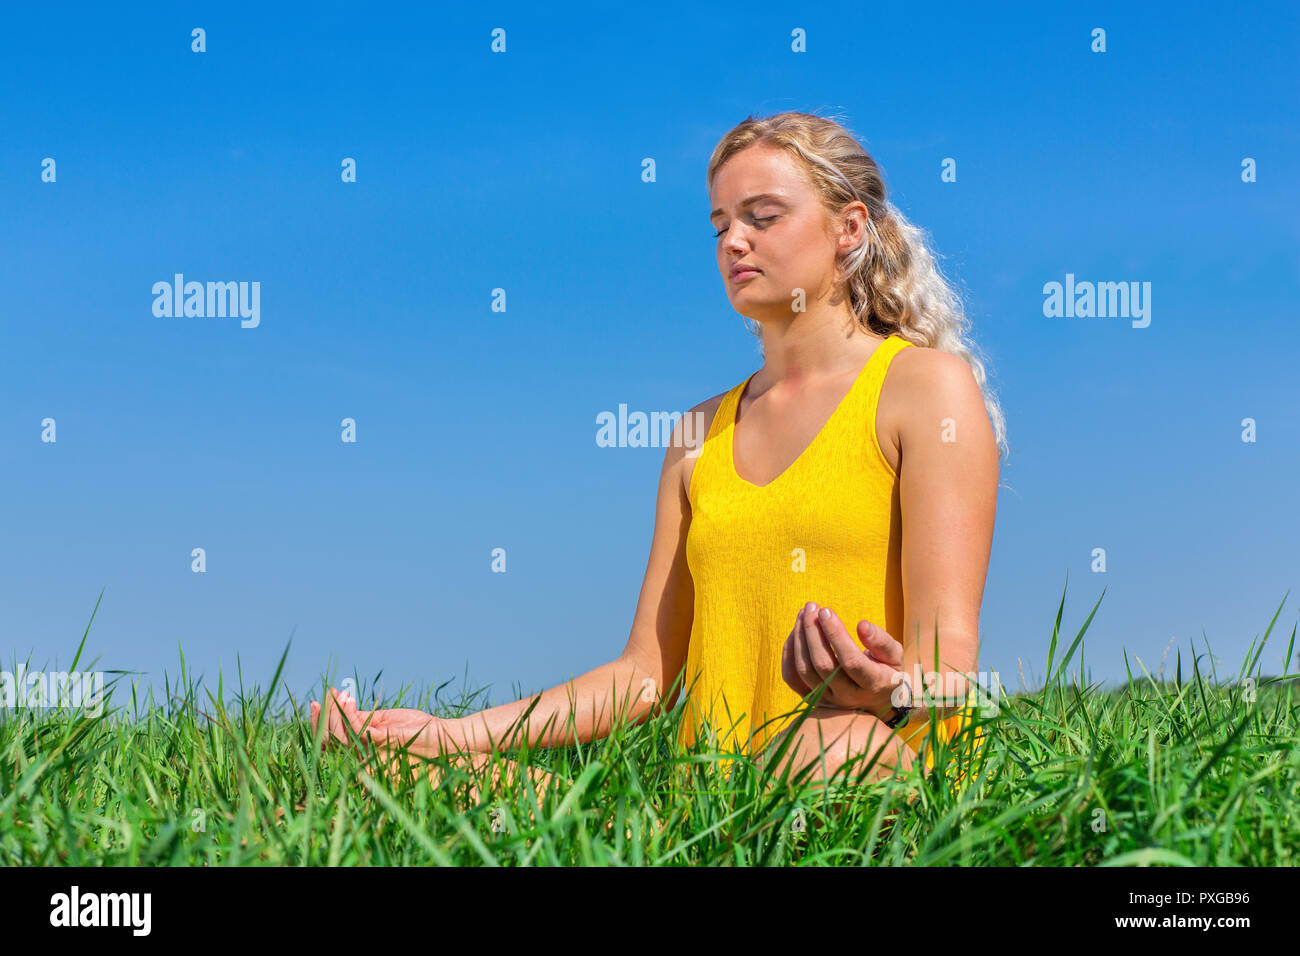 Joven Mujer rubia holandesa meditando en la naturaleza con el cielo azul Foto de stock